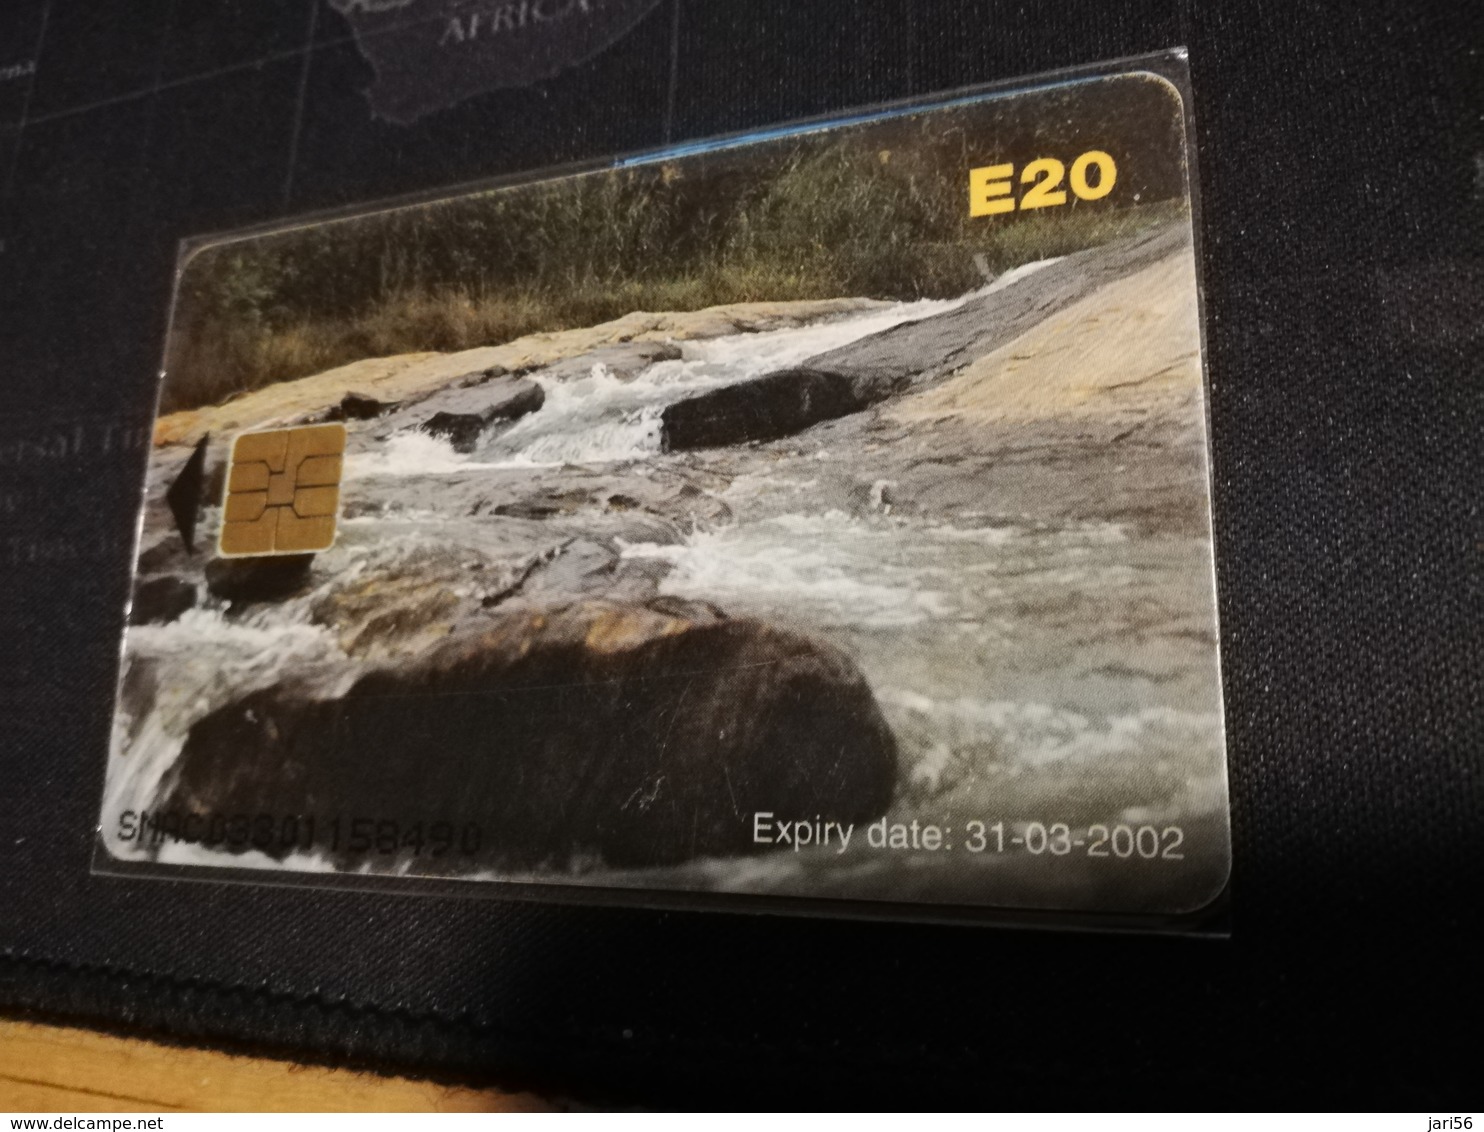 SWASILAND CHIPCARD  E20  ENVIROMENT     USED CARD **1054** - Swasiland